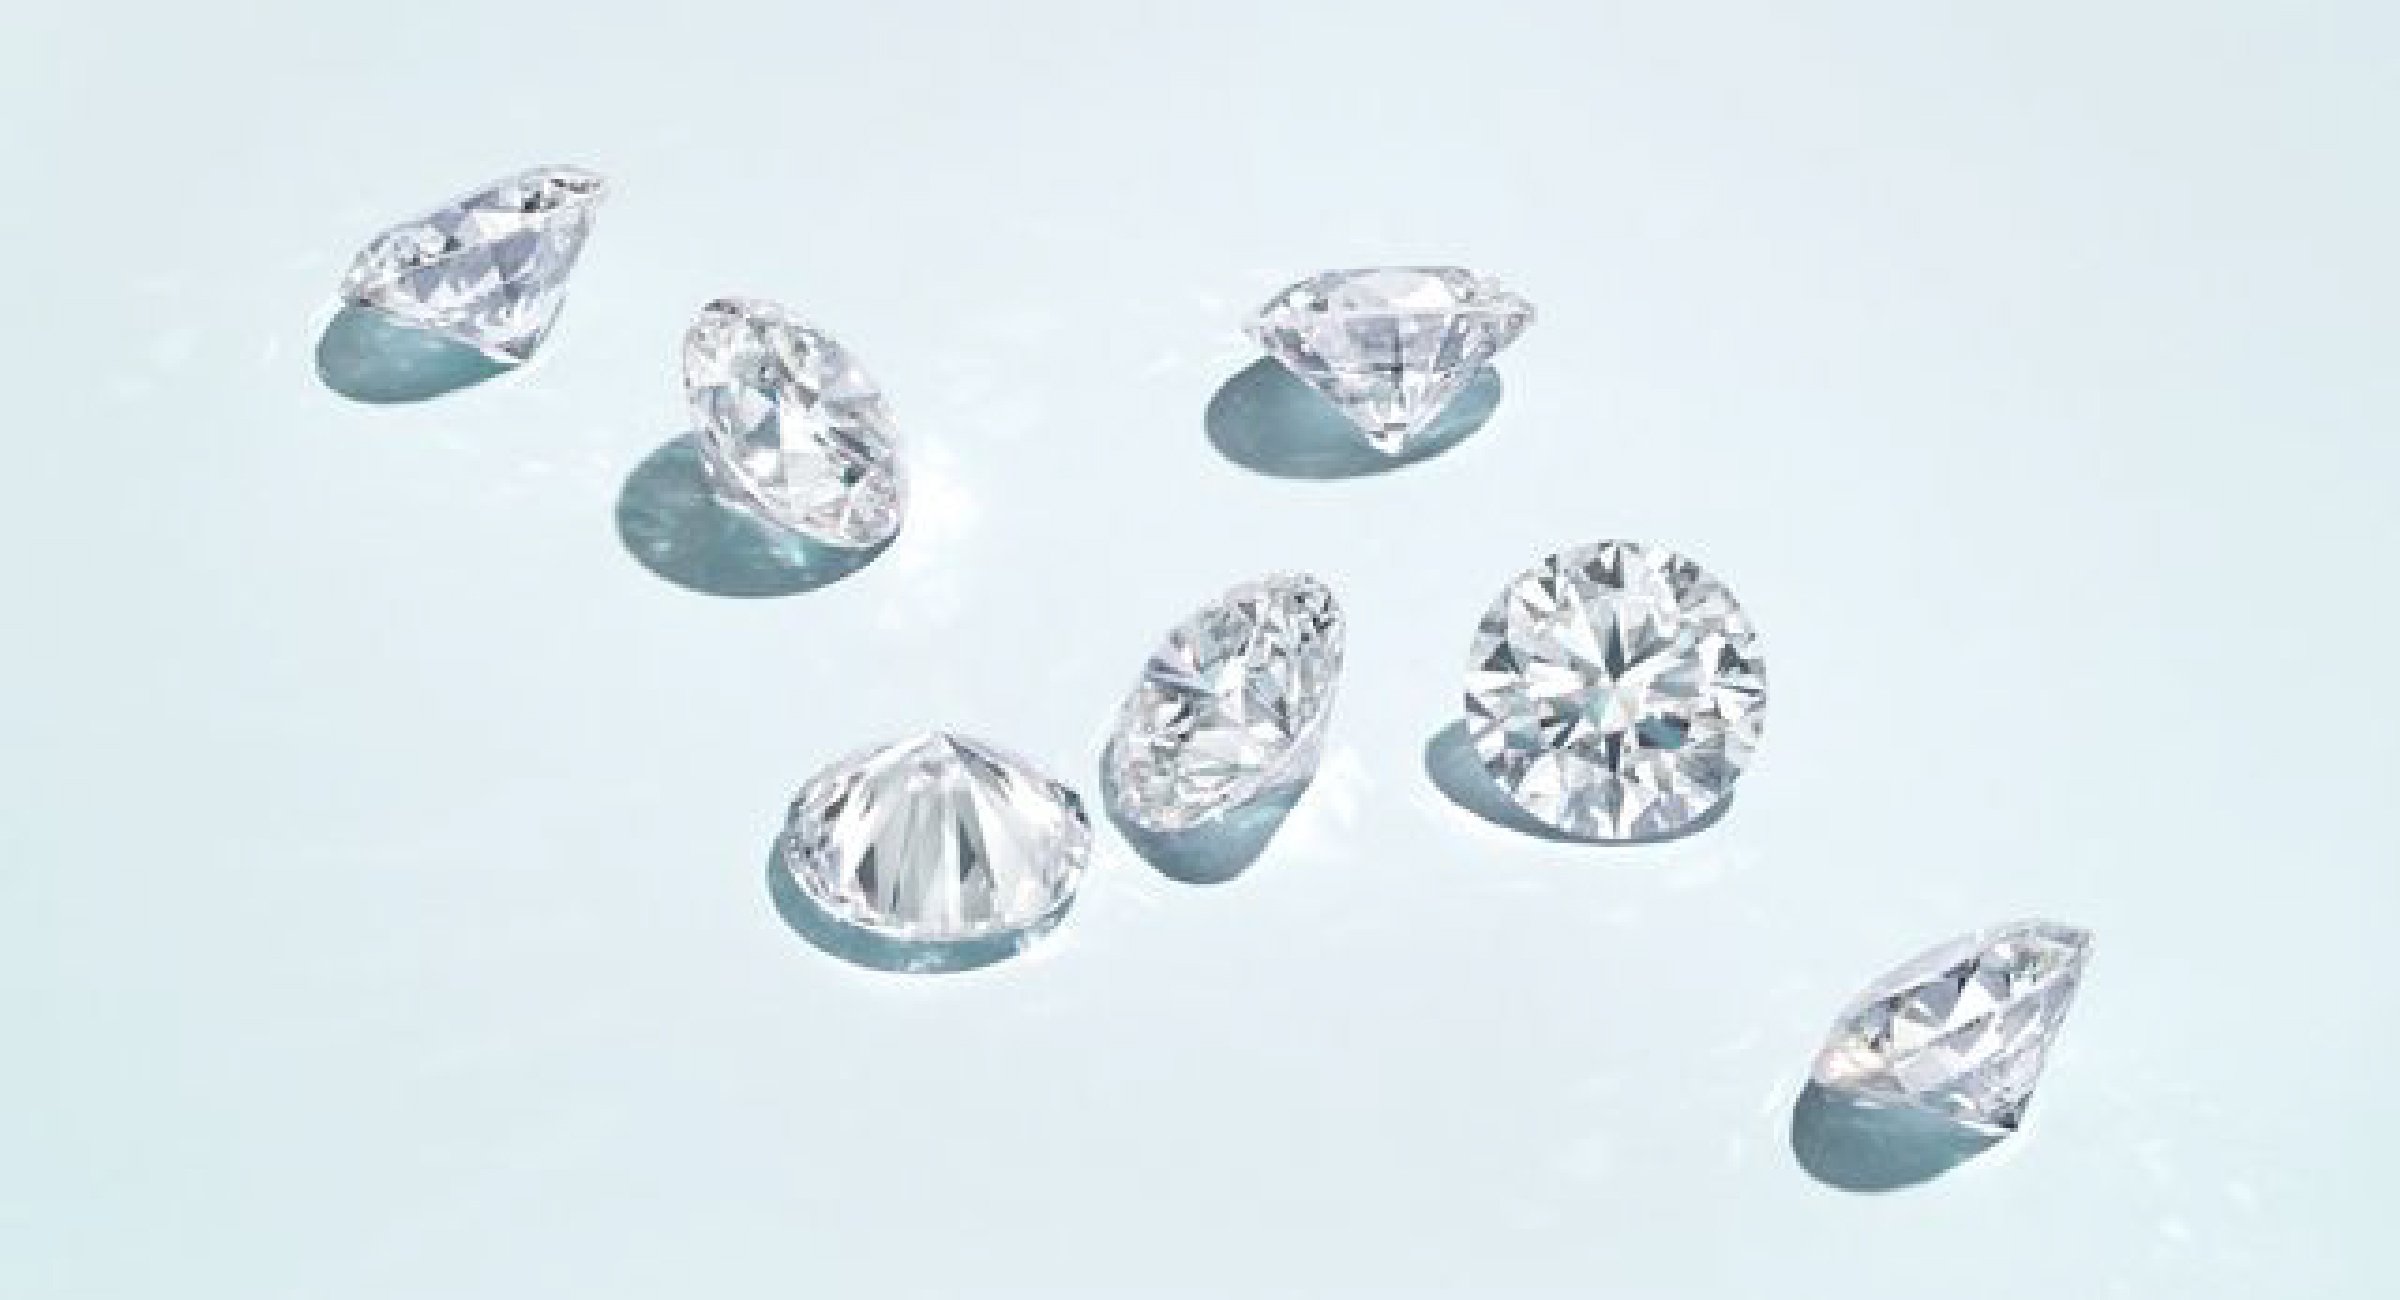 Large Diamonds vs Small or Medium Diamonds